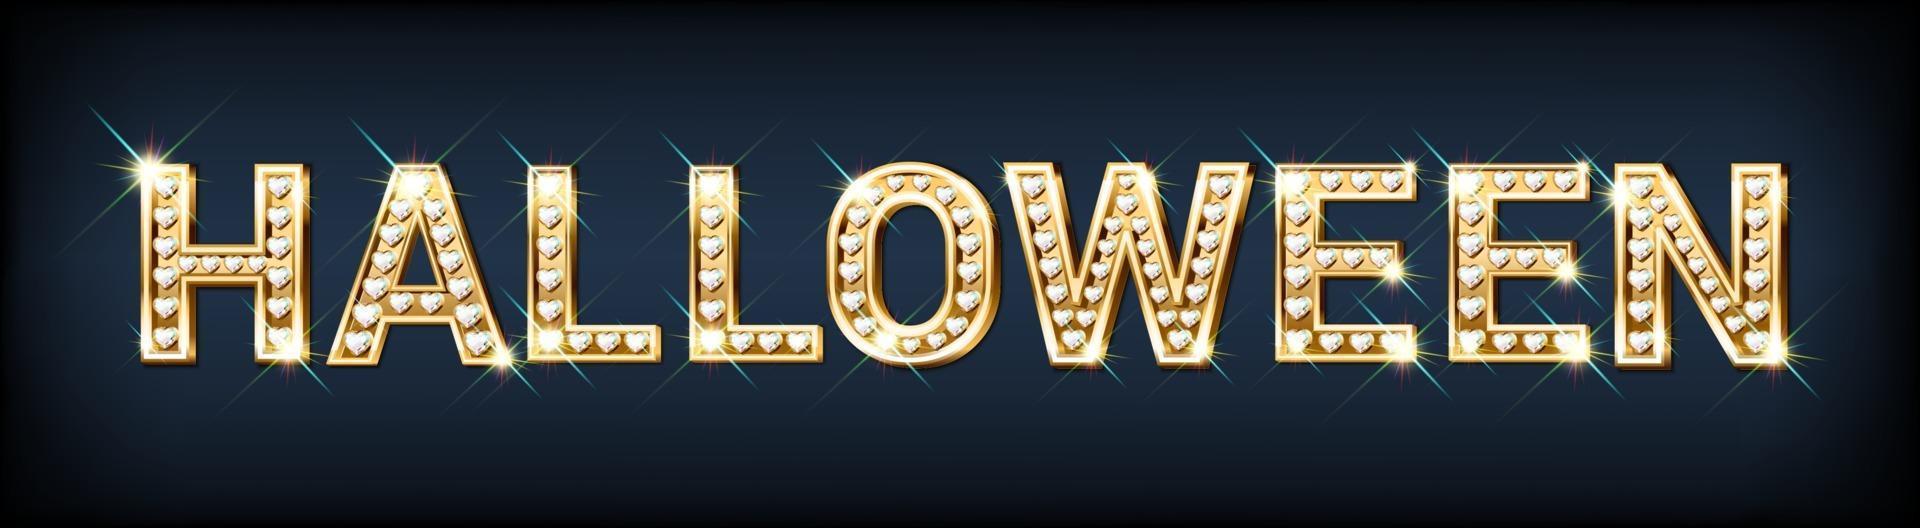 feestelijke banner halloween gemaakt van gouden letters diamanten vector